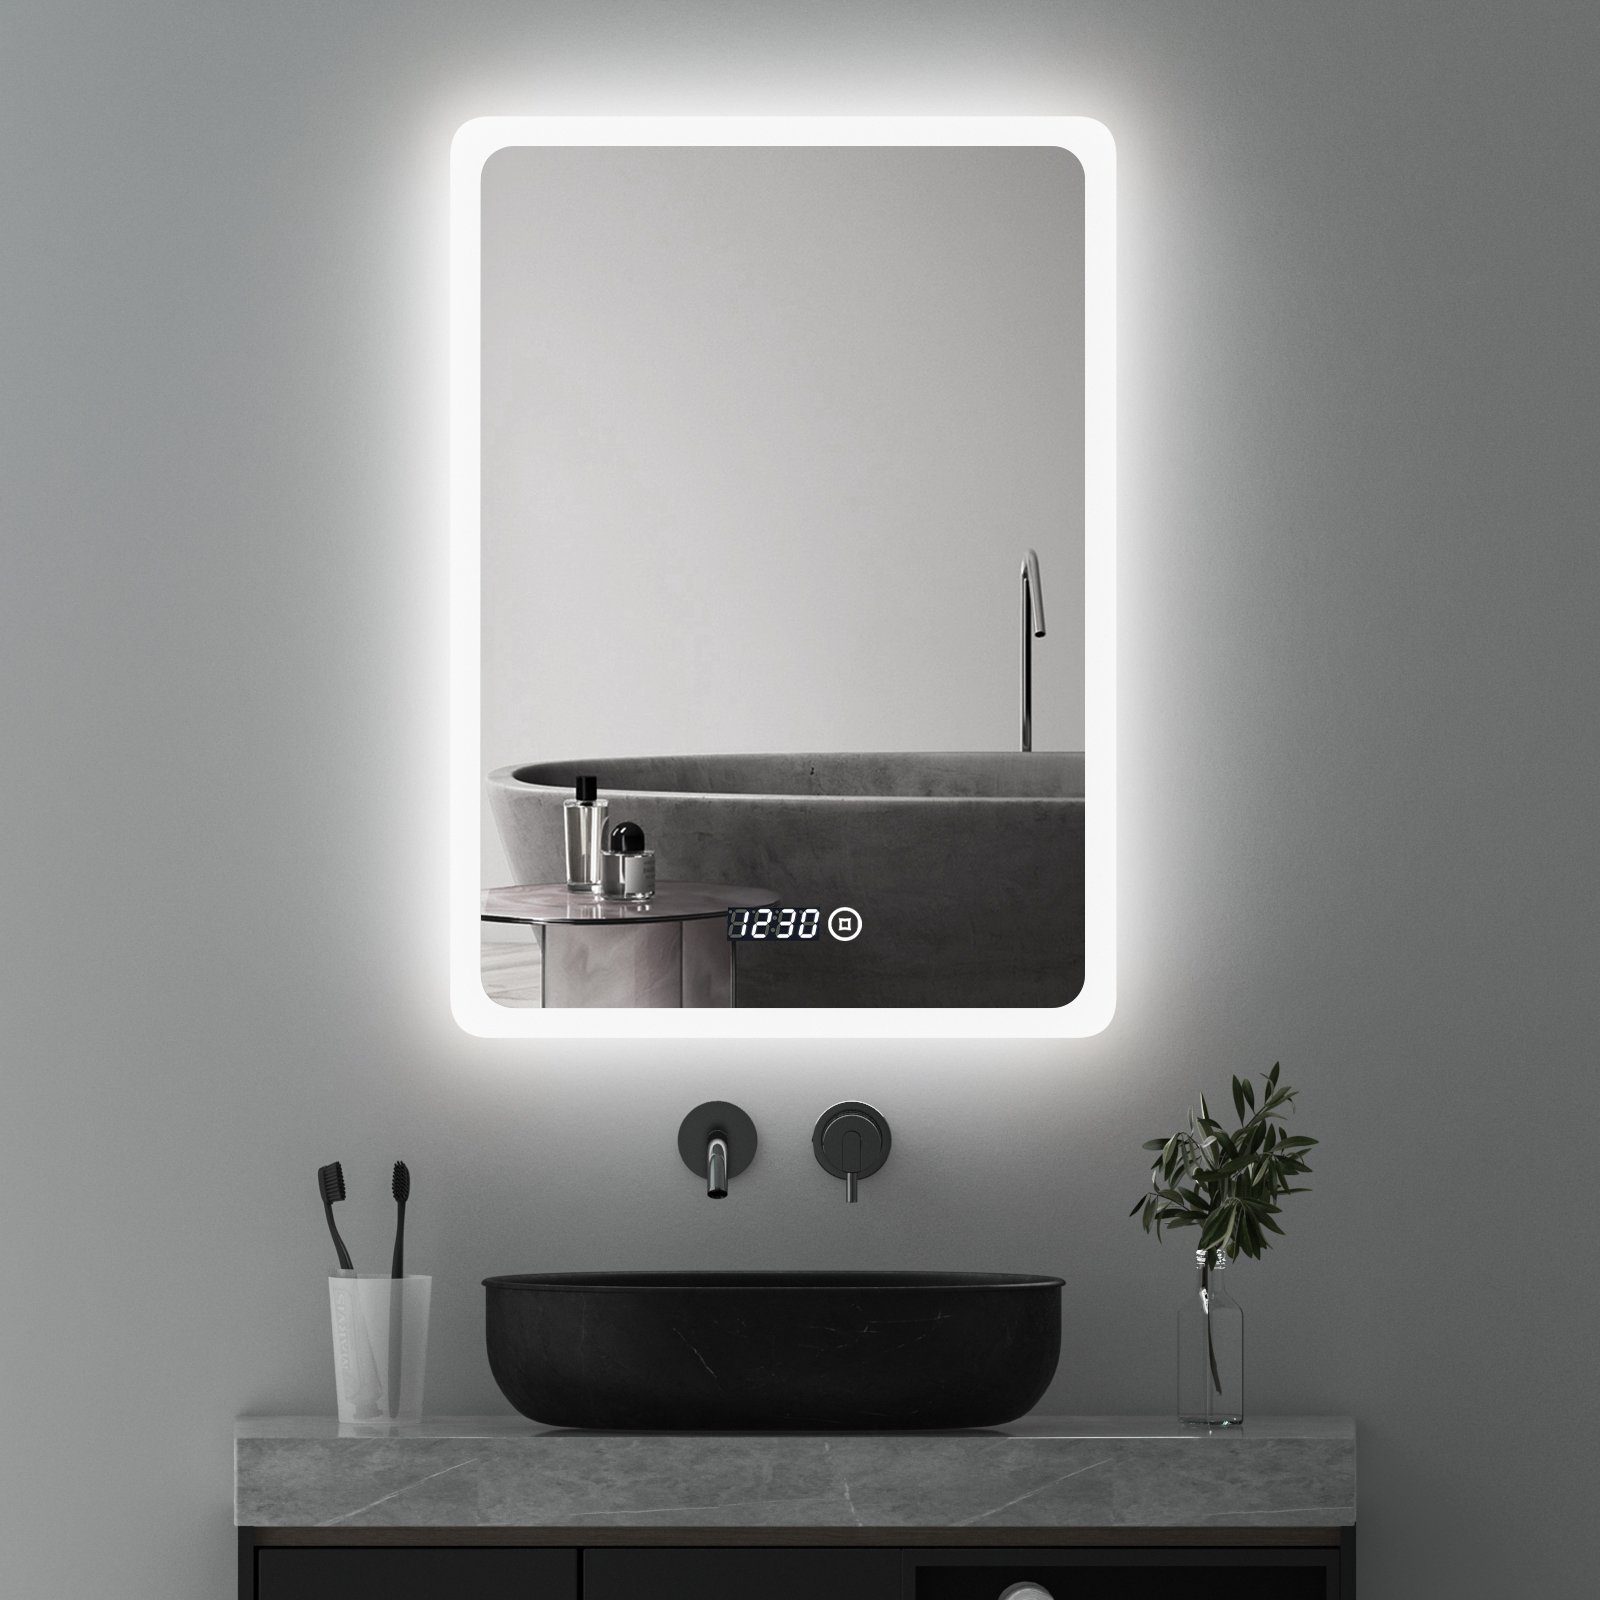 WDWRITTI Badspiegel Led 50x70 80x60 100x60 Touch Uhr dimmbar Зеркало Bad mit beleuchtung (Badezimmerspiegel Wandspiegel, Speicherfunktion, Helligkeit dimmbar, Wandschalter), Warmweiß, Neutralweiß, Kaltweiß, Energiesparend